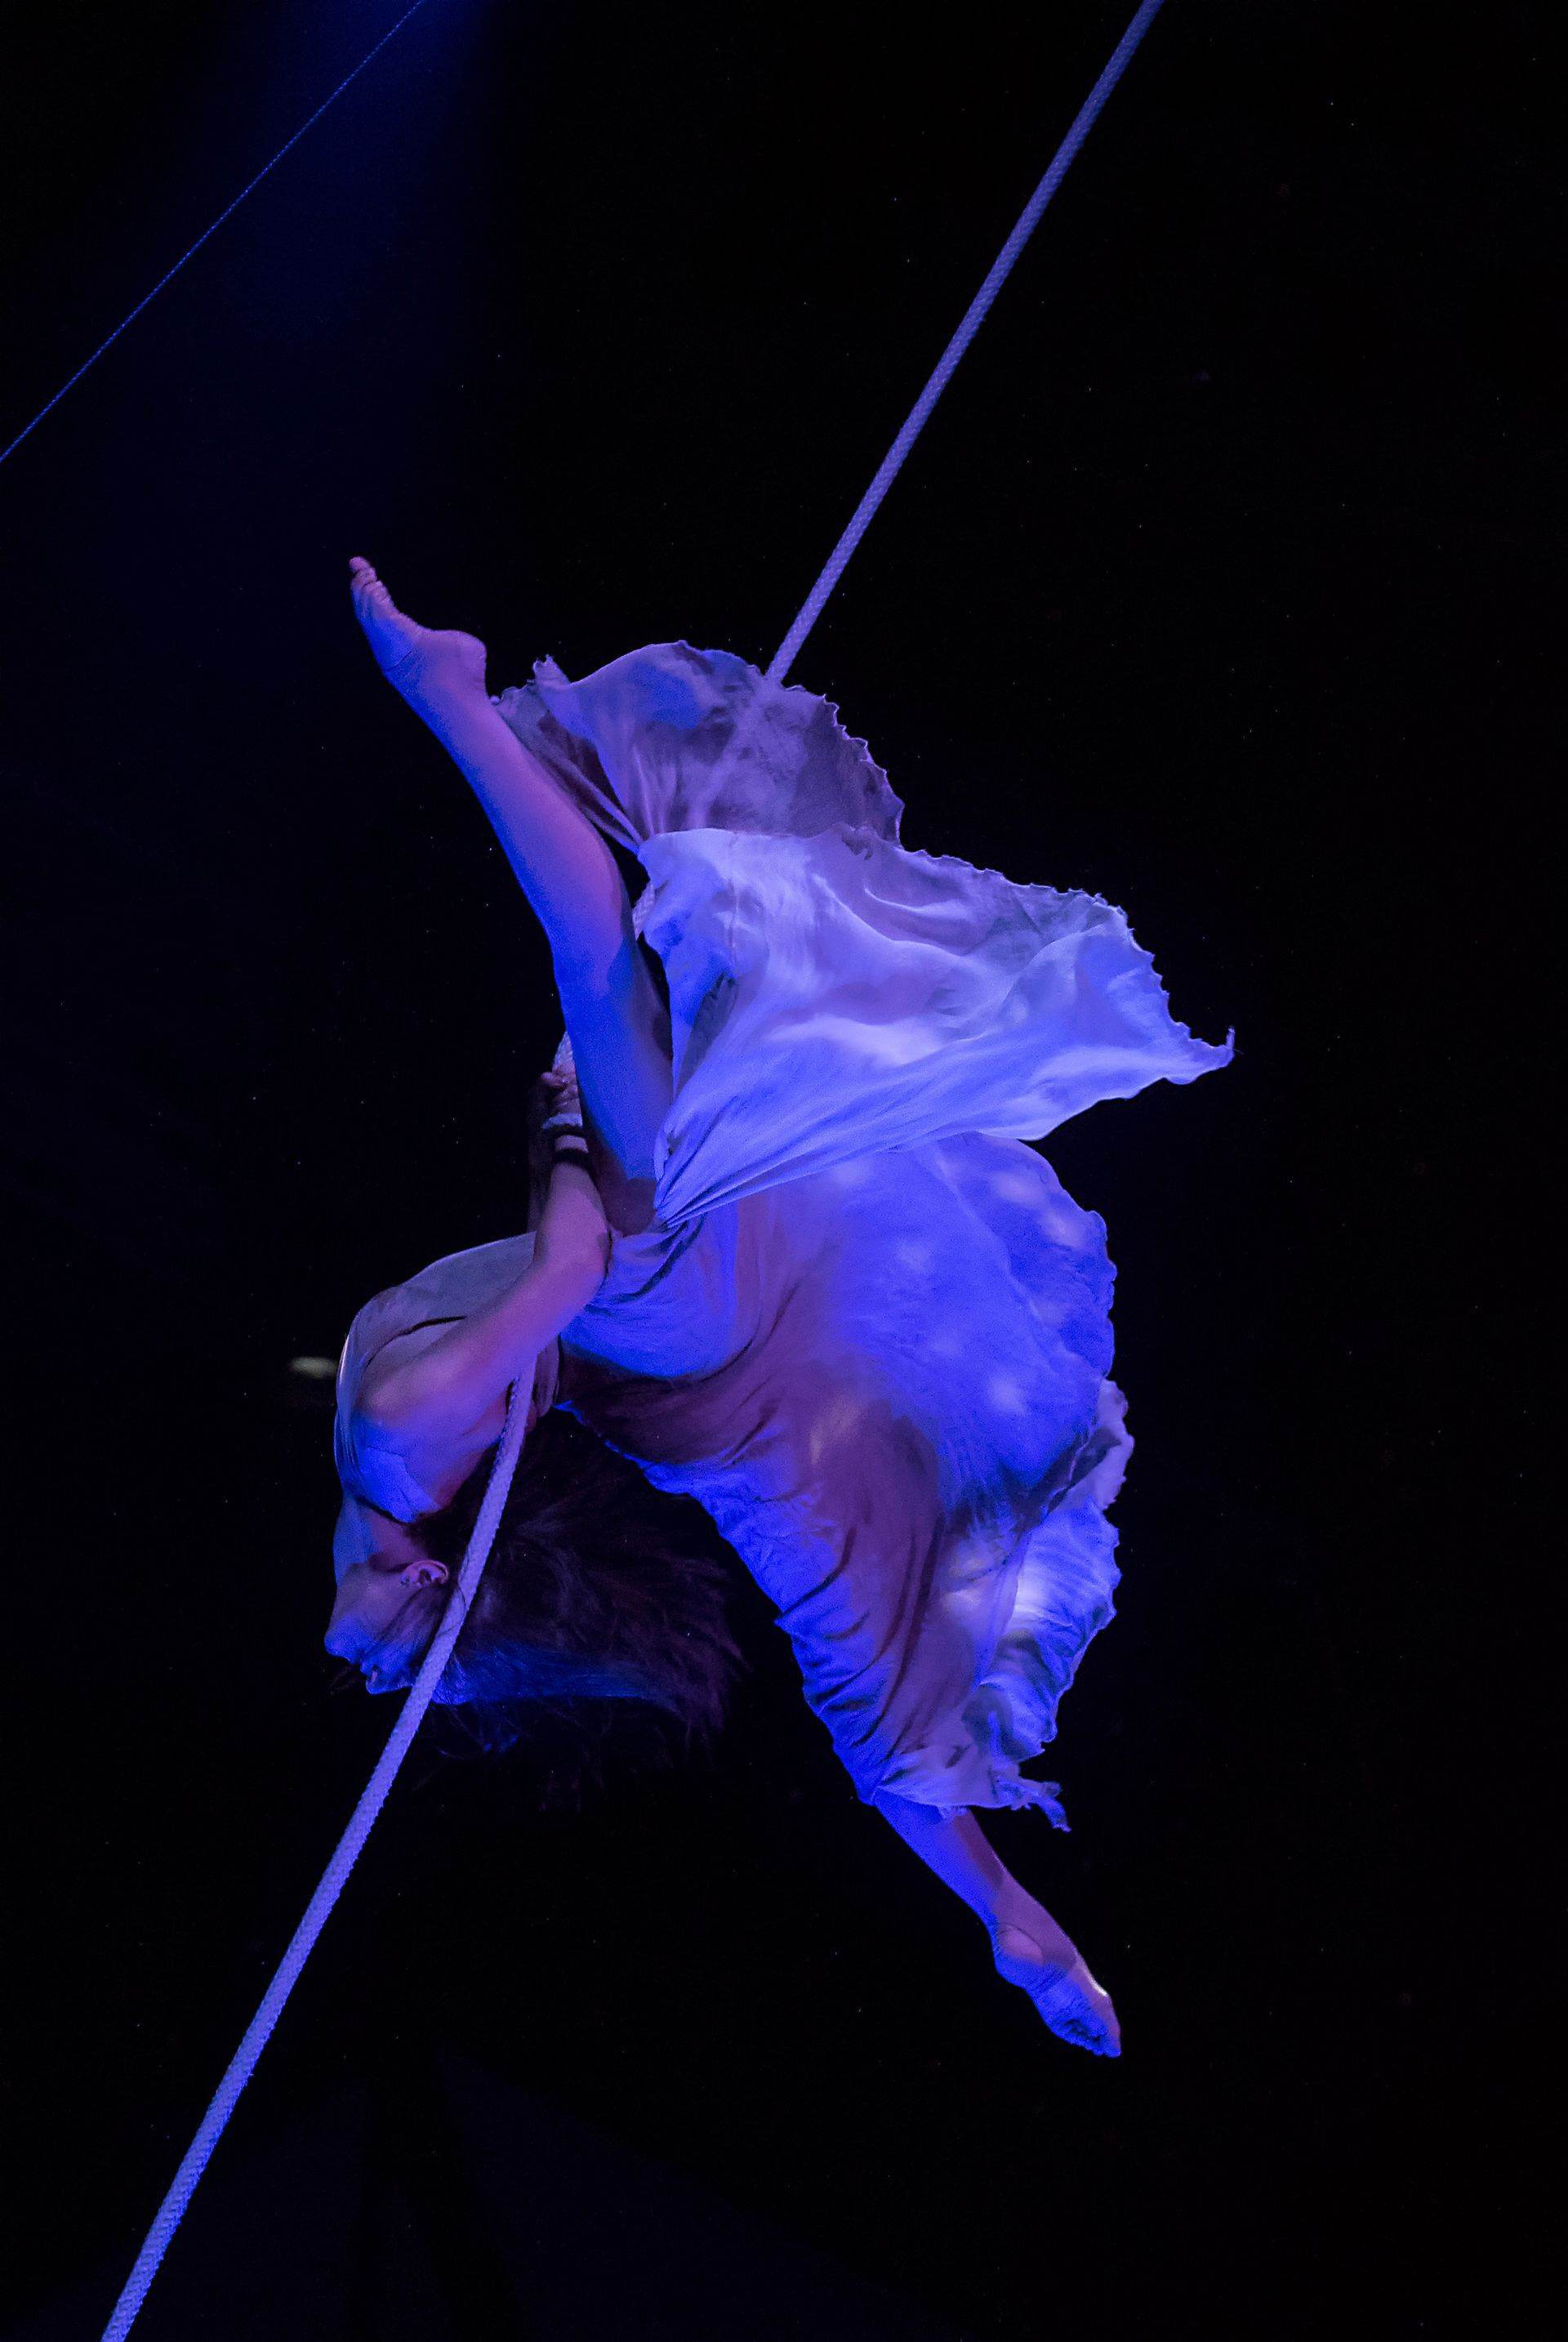 Scalada - Vision by Cirque du Soleil 2016 : danse aérienne avec corde